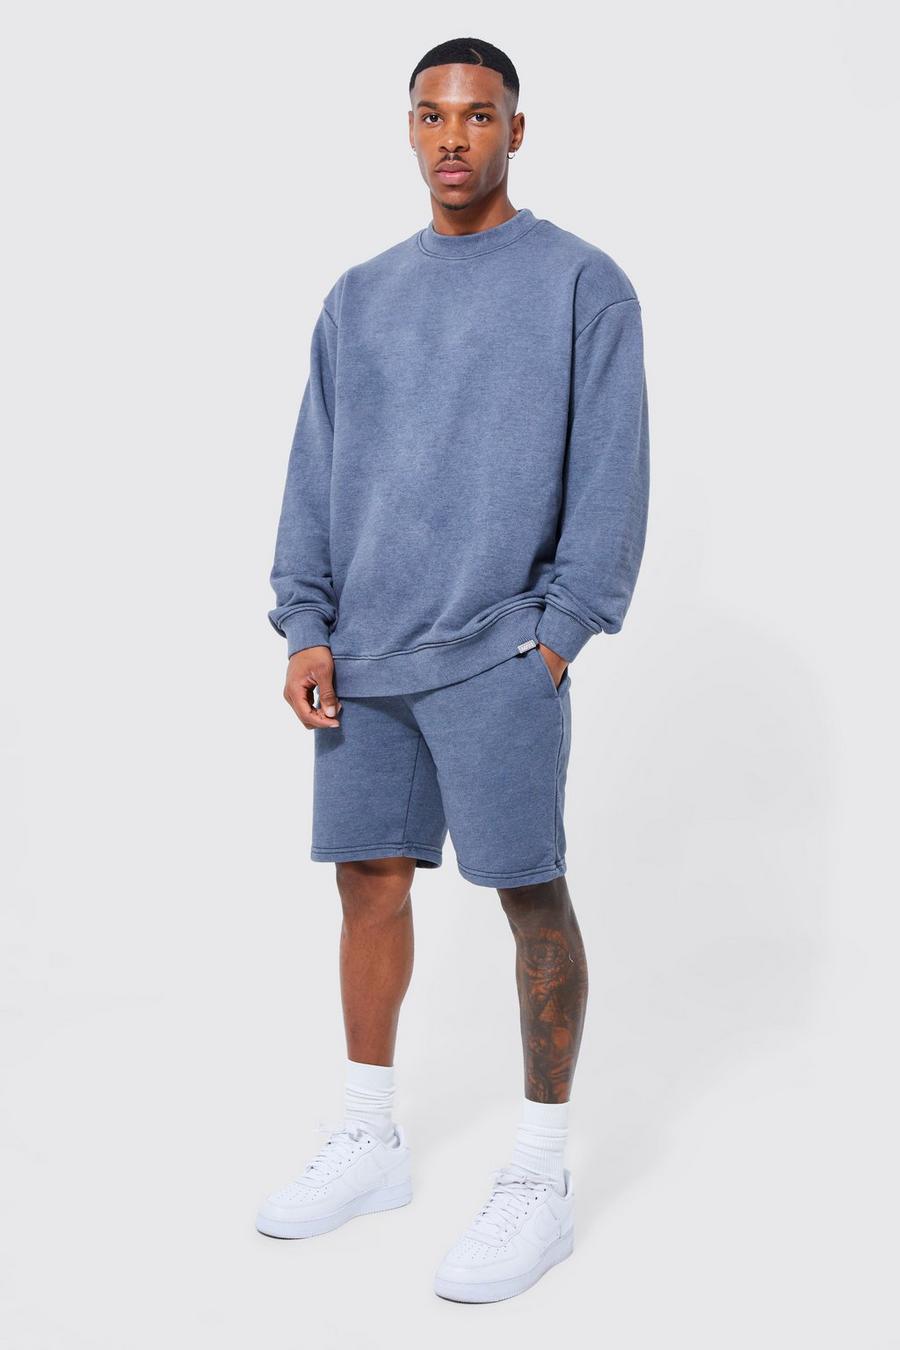 Charcoal grey Oversized Man Acid Wash Sweater Short Tracksuit